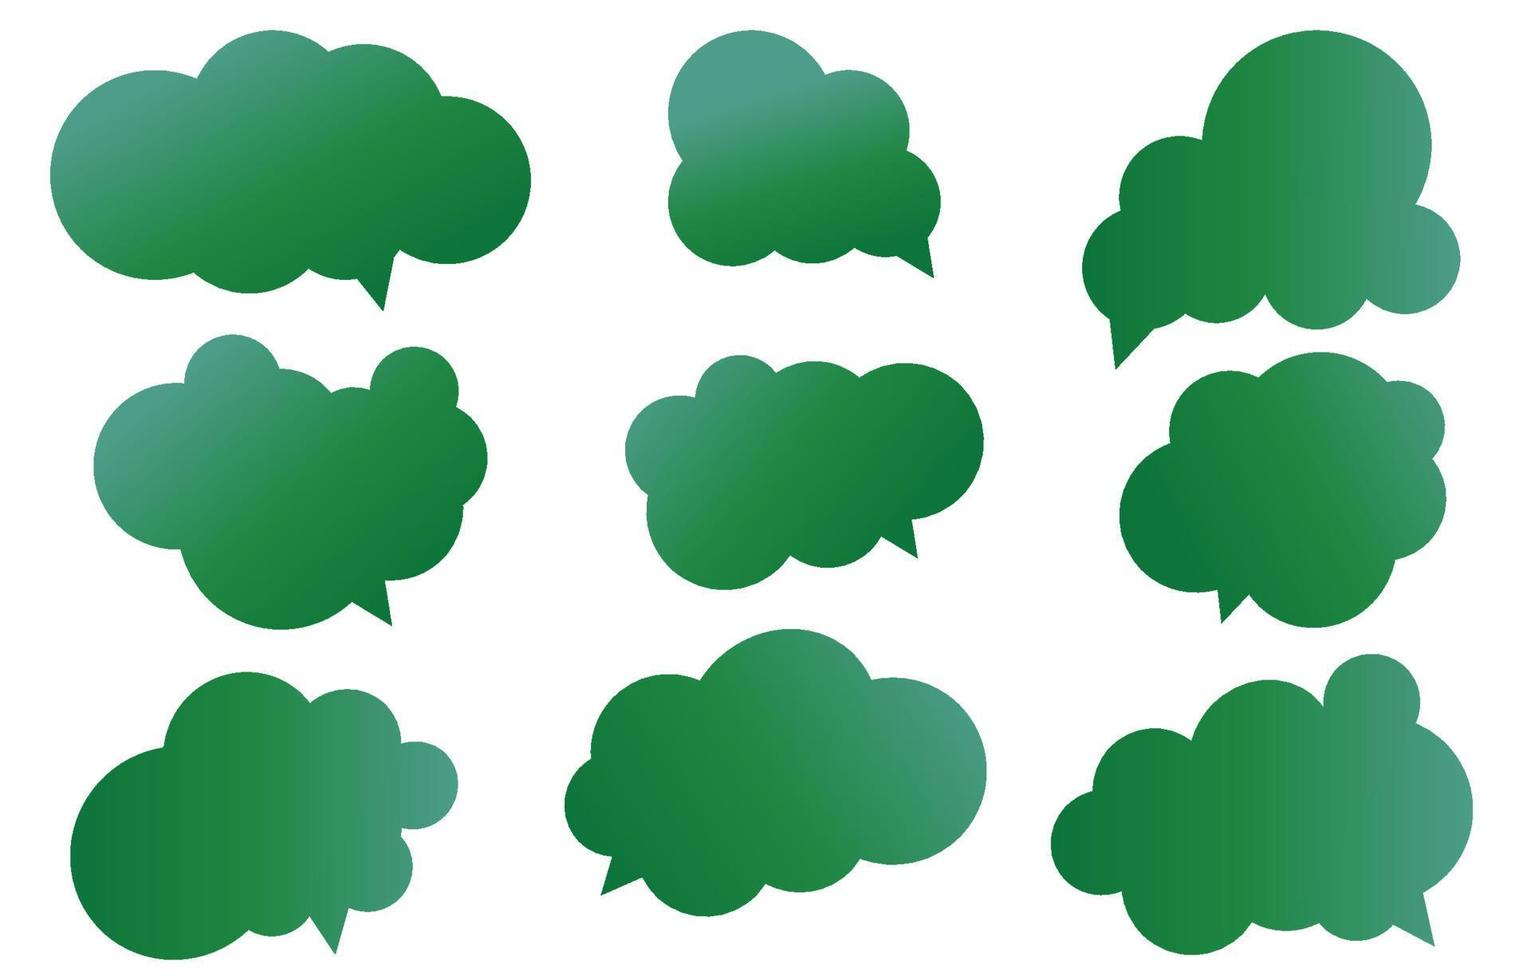 impostare fumetti verdi su sfondo bianco. chat vettore doodle messaggio o icona di comunicazione nuvola che parla per fumetti e dialogo di messaggio minimo